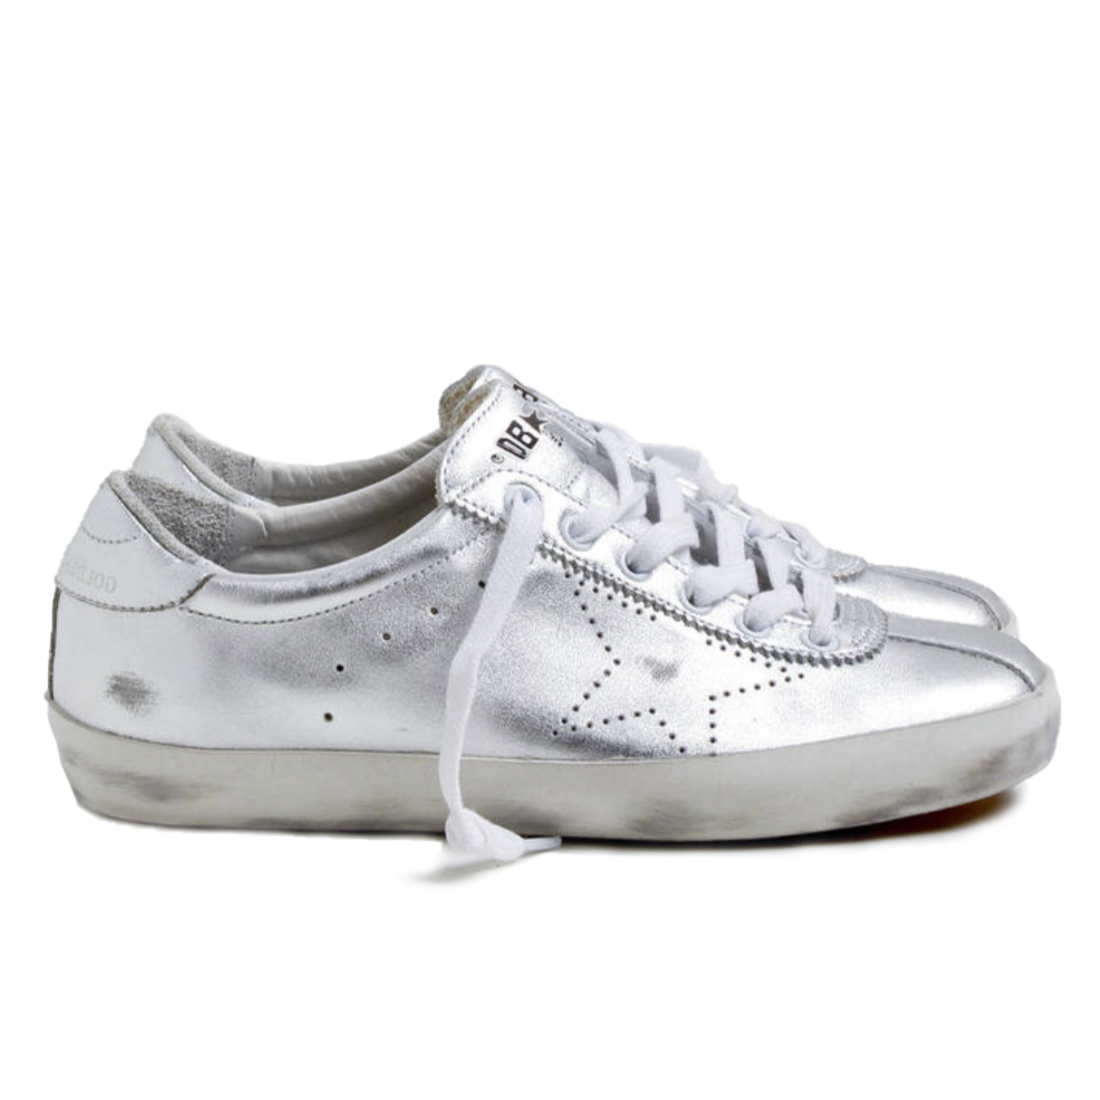 Elegant Silver Patent Sneakers for Men